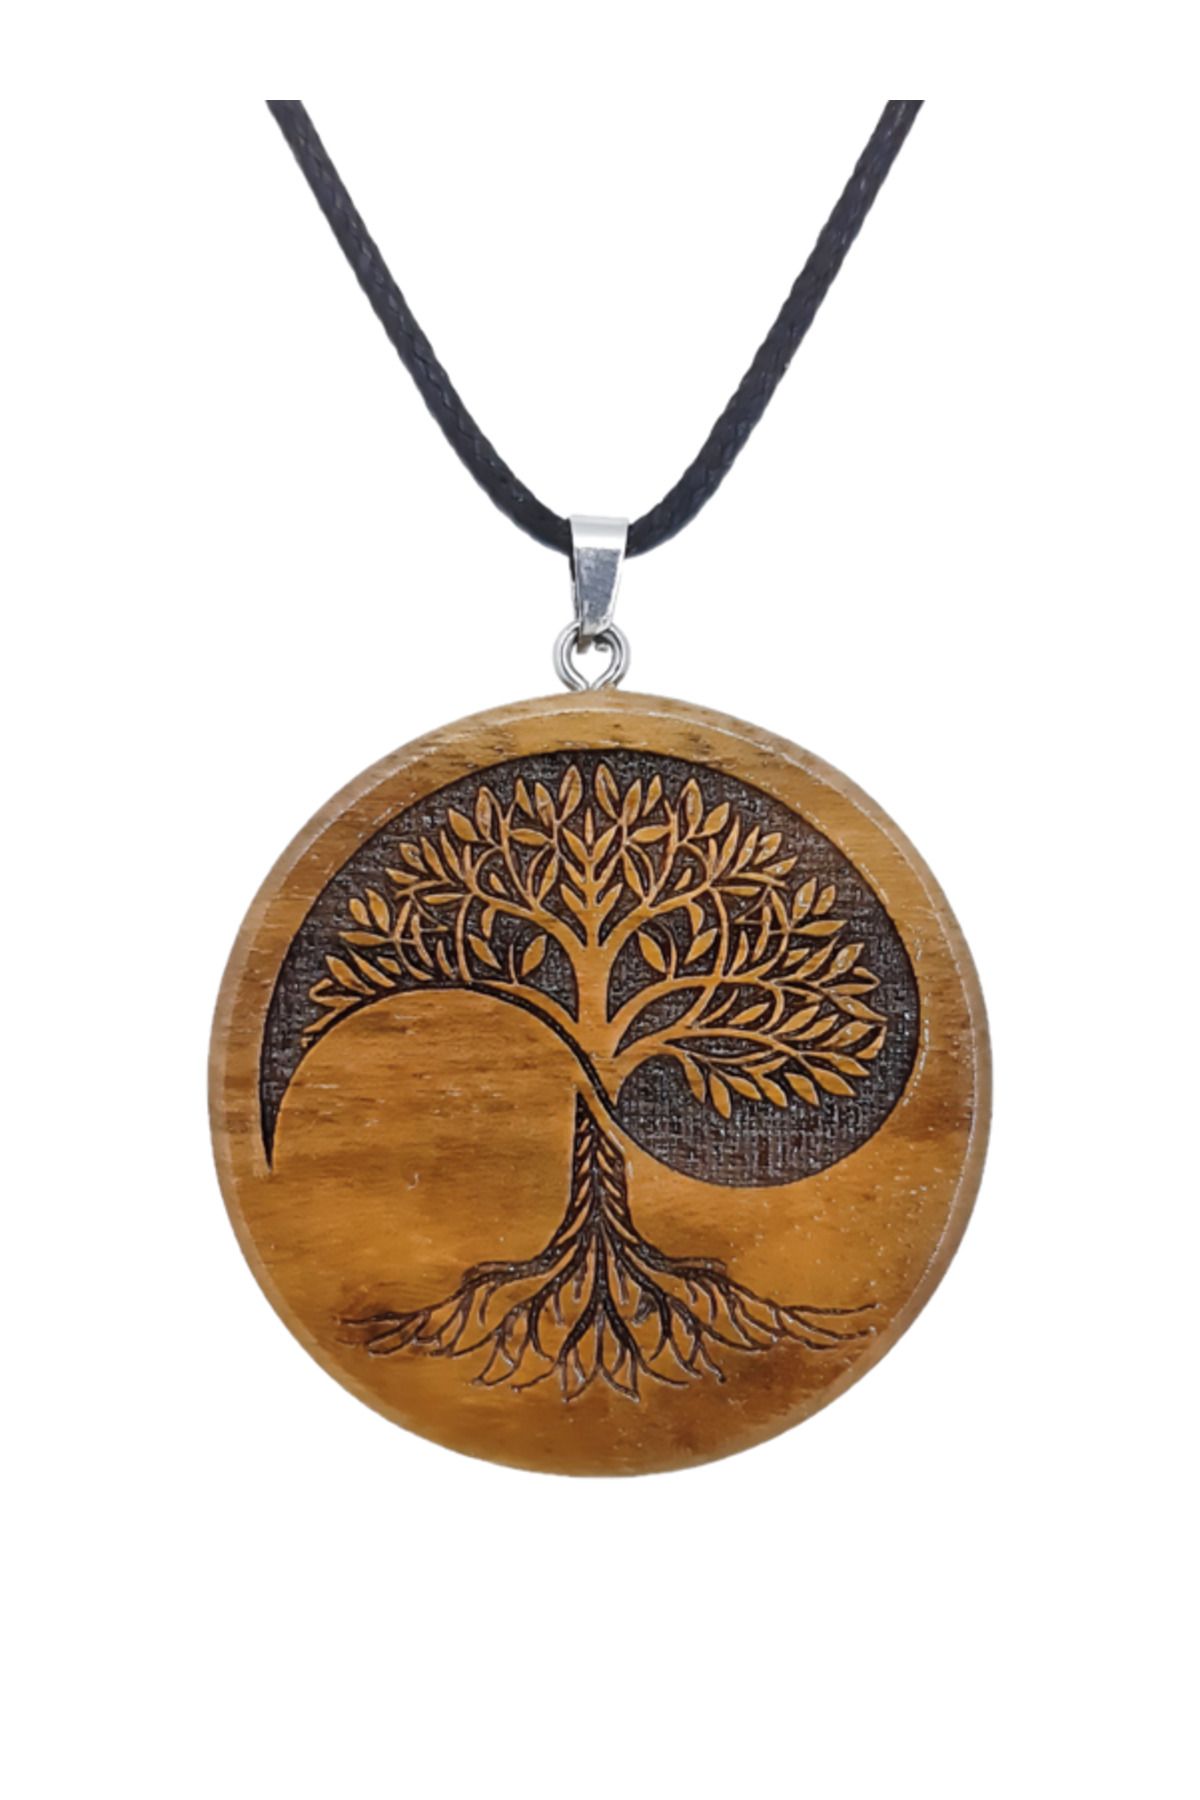 Sinerium Design El Yapımı Yin Yang Hayat Ağacı Kolye, Hayat Ağacı, Yin Yang, Yaşam Ağacı, Kişiye Özel, İsme Özel